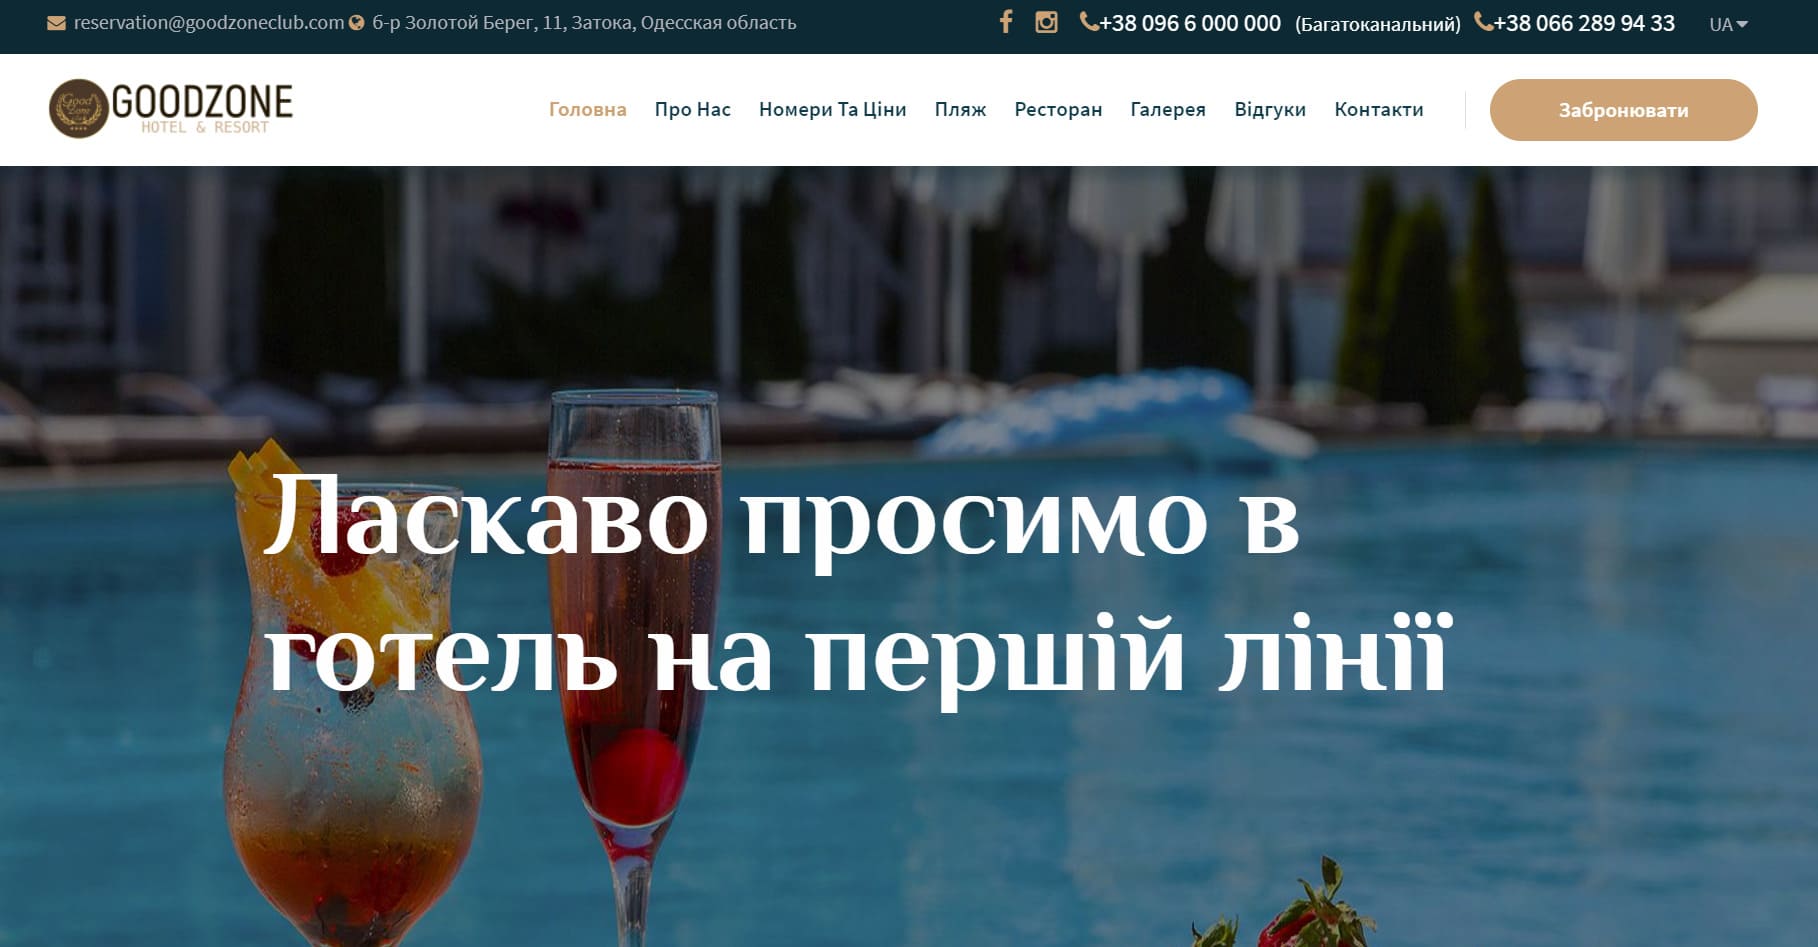 Разработка нового сайта на CMS СПРАВА и украинской версии